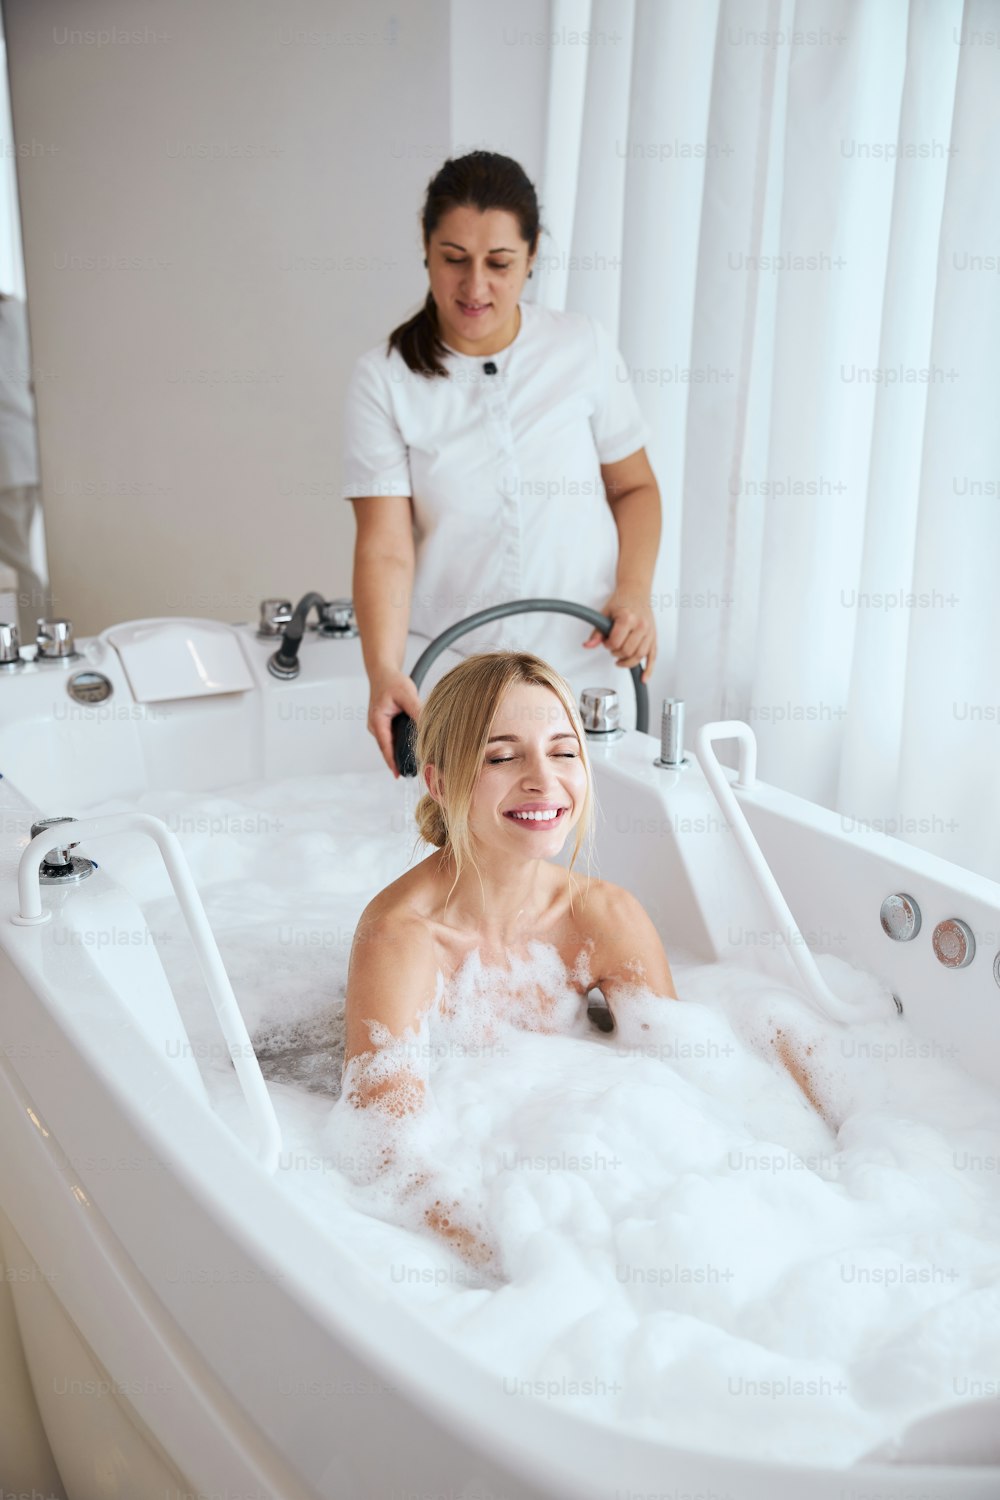 Taille hoch-Porträt einer Frau, die in der Hydromassage-Badewanne genießt, und einer professionellen Spa-Salon-Mitarbeiterin, die während der Unterwassermassage einen Schlauch benutzt